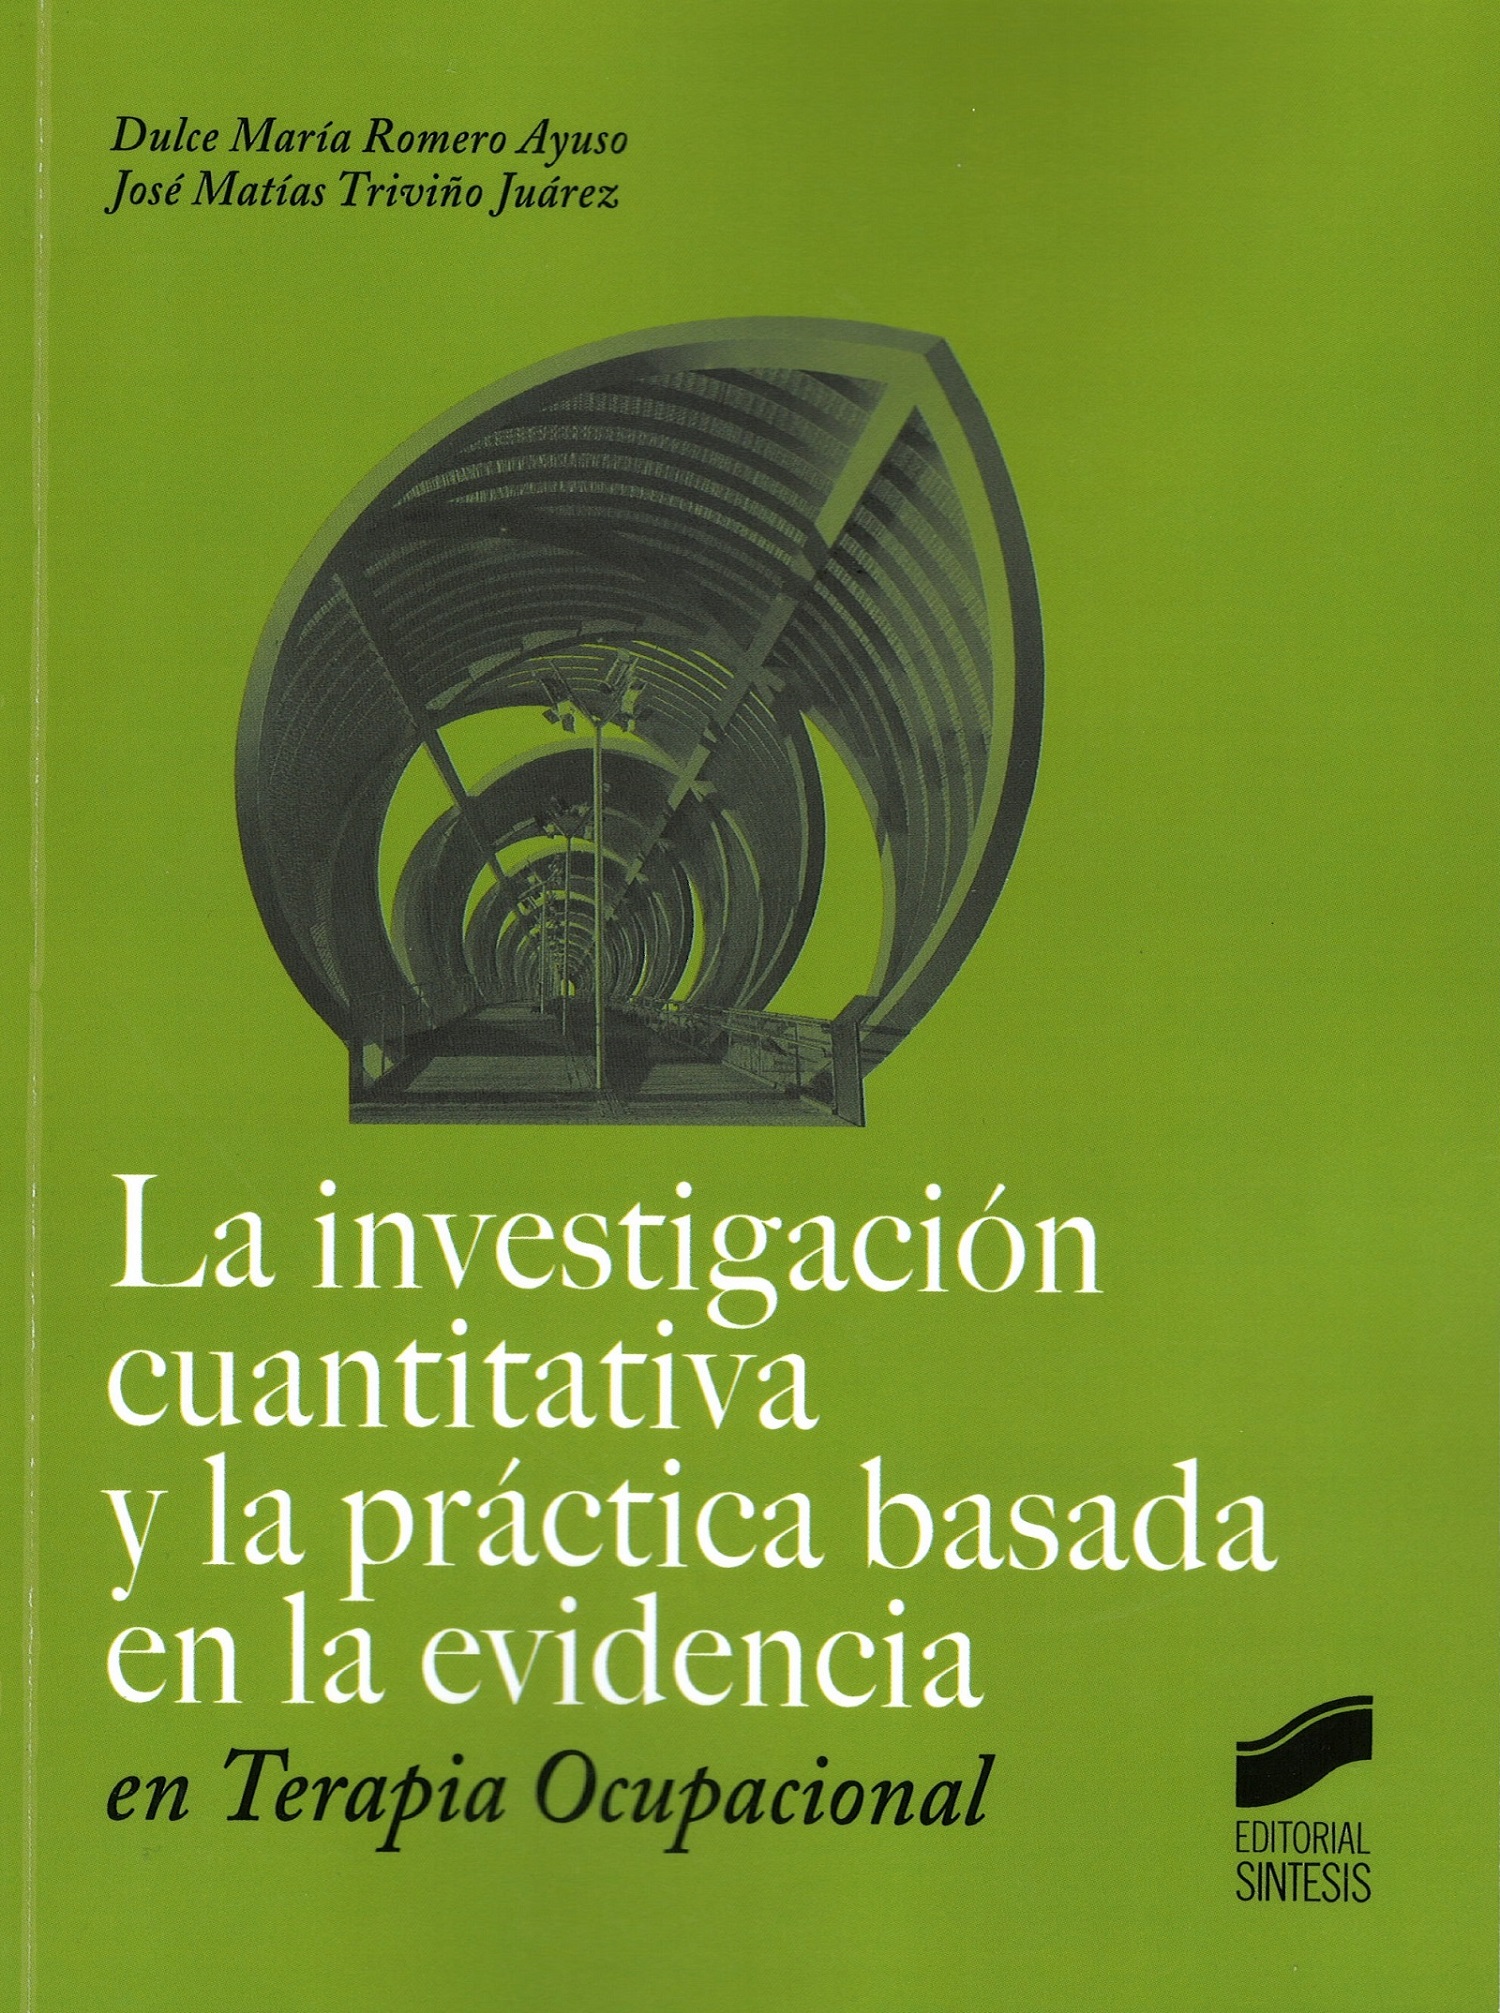 Imagen de portada del libro La investigación cuantitativa y la práctica basada en la evidencia en terapia ocupacional